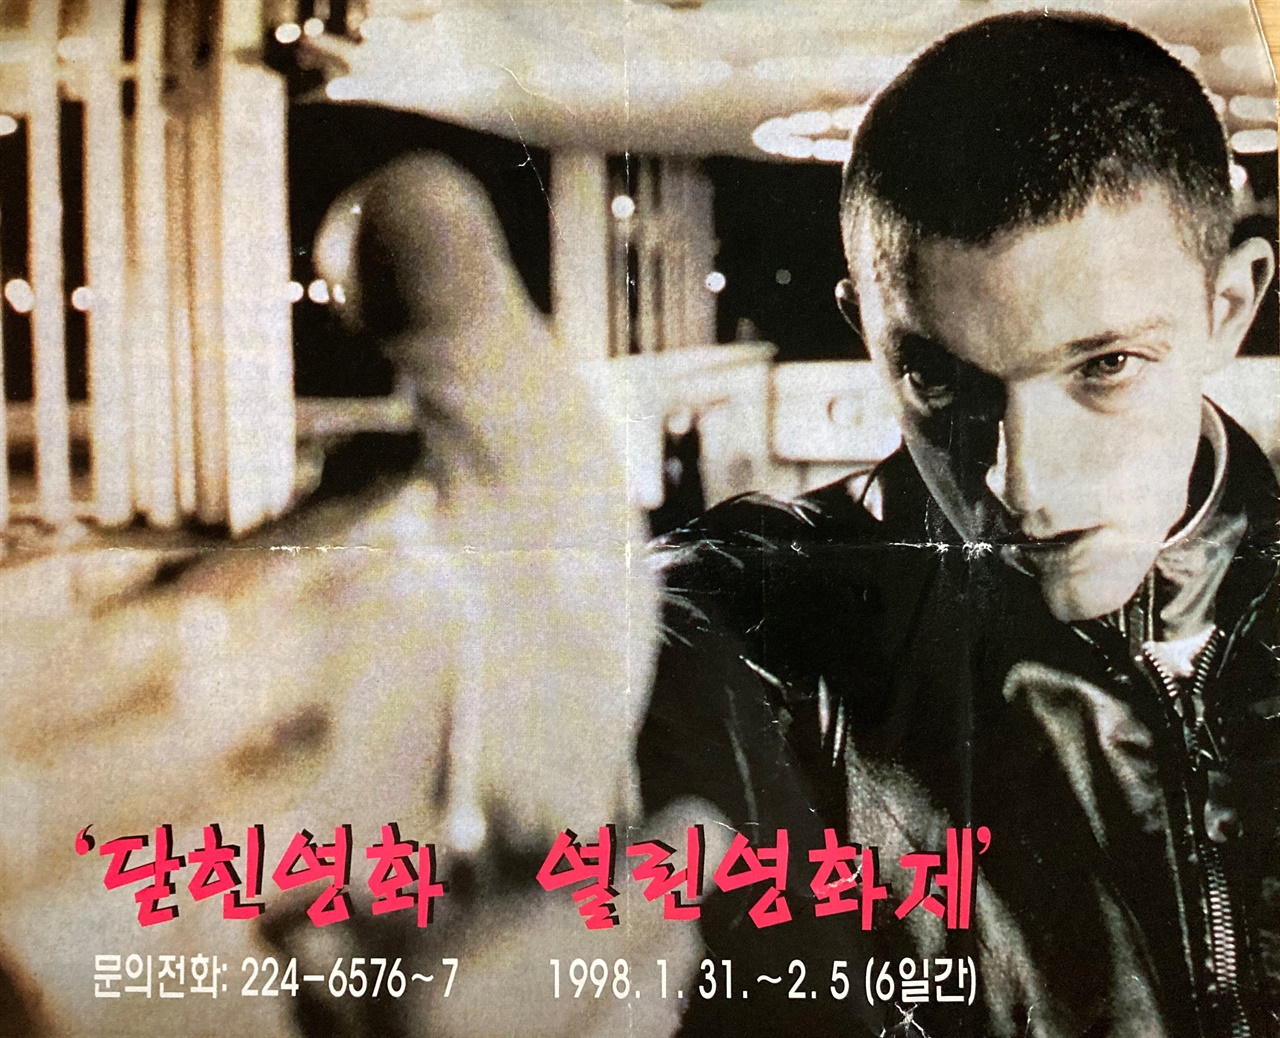  1998년 광주 씨네마떼끄 영화로 세상보기에서 주최한 닫힌영화 열린영화제